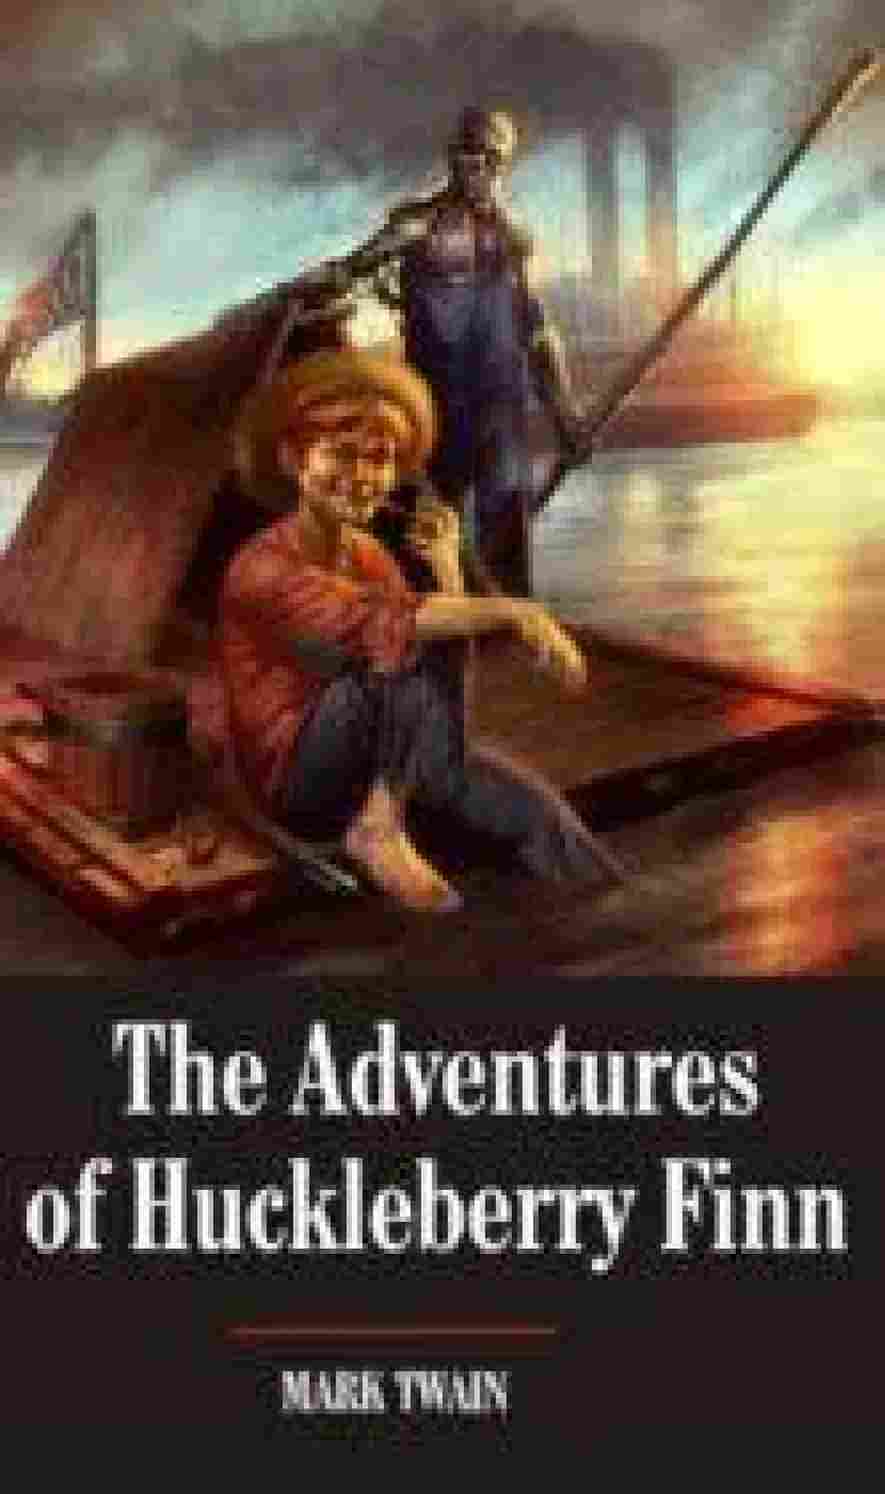 Adventures of Huckleberry Finn - by Mark Twain